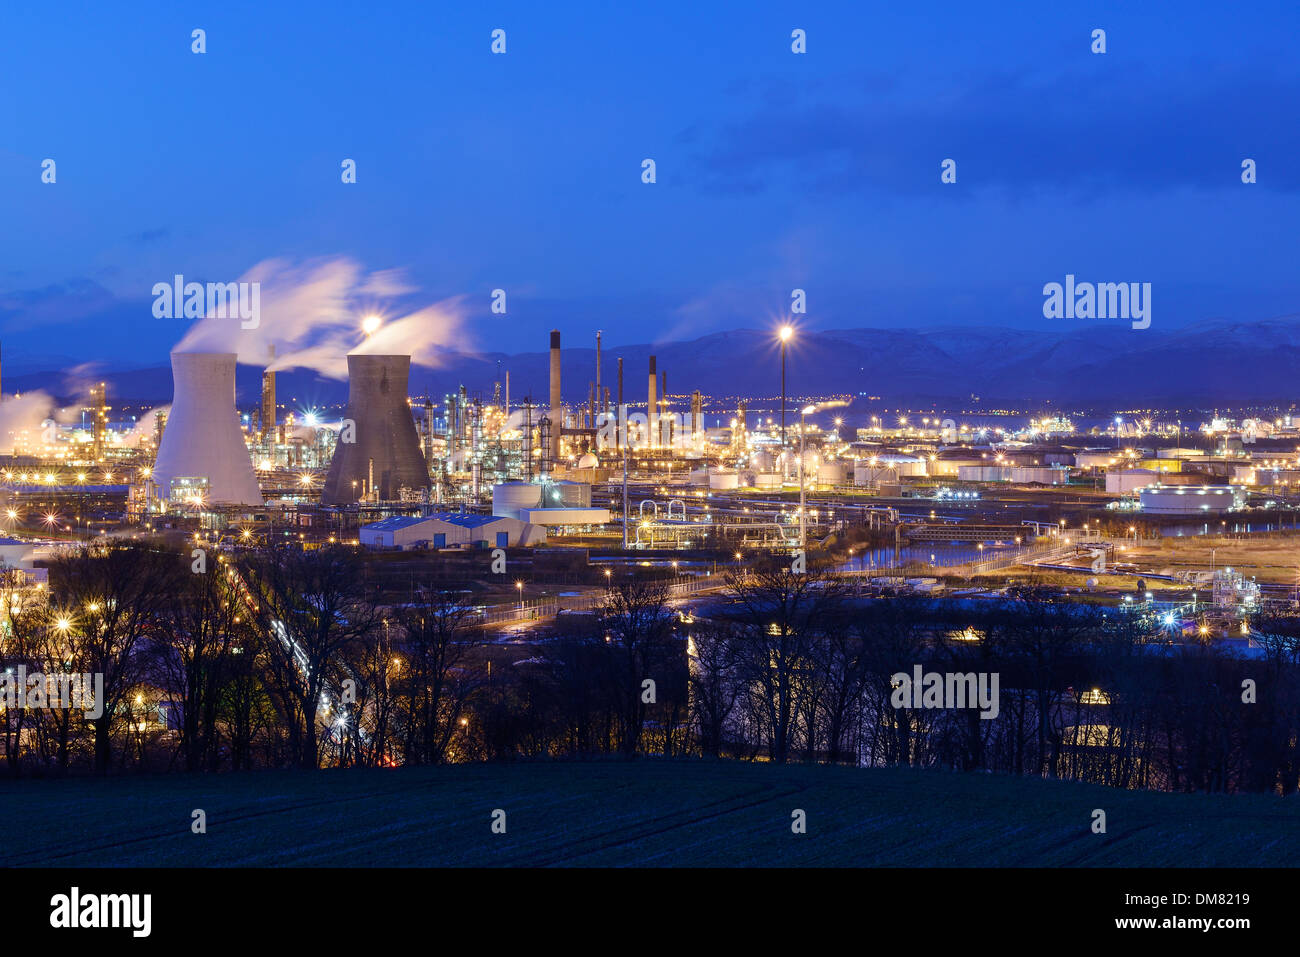 La refinería de petróleo Grangemouth y complejos industriales al atardecer Foto de stock